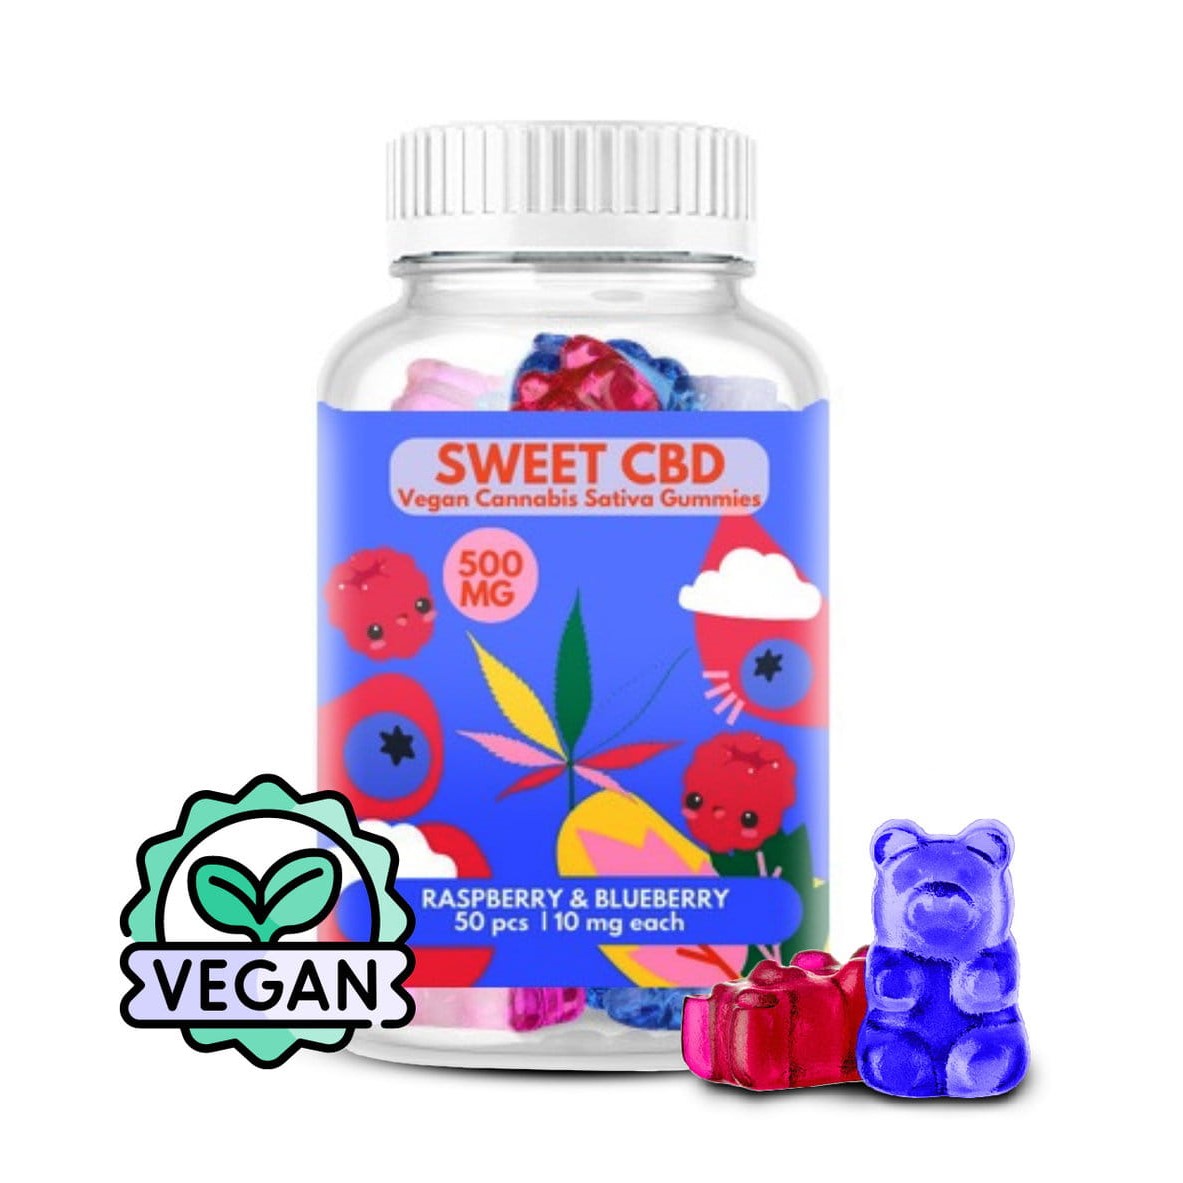 sweet-cbd-500-mg-summer-berry-vegan-zelki-weganskie-1